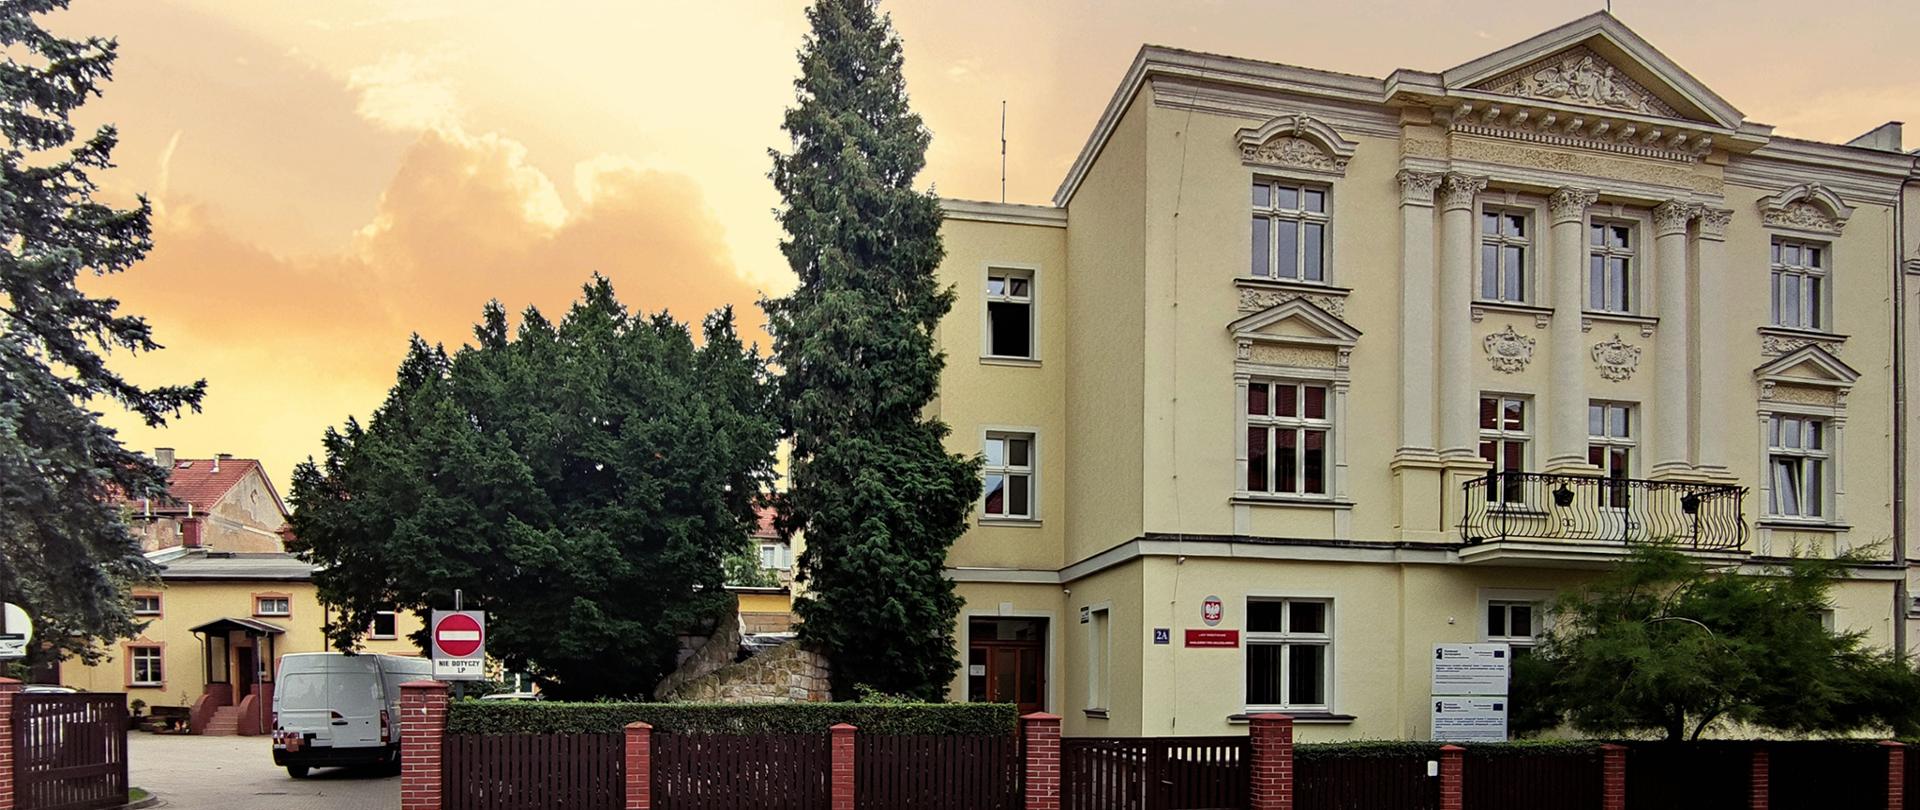 widok budynku siedziby Nadleśnictwa Bolesławiec o zachodzie słońca od strony ulicy. Budynek umiejscowiony jest po prawej stronie obrazka a jego centralną część zajmują drzewa pod którymi znajduje się wjazd na plac przy nadleśnictwie oraz zaparkowane na nim samochody. 